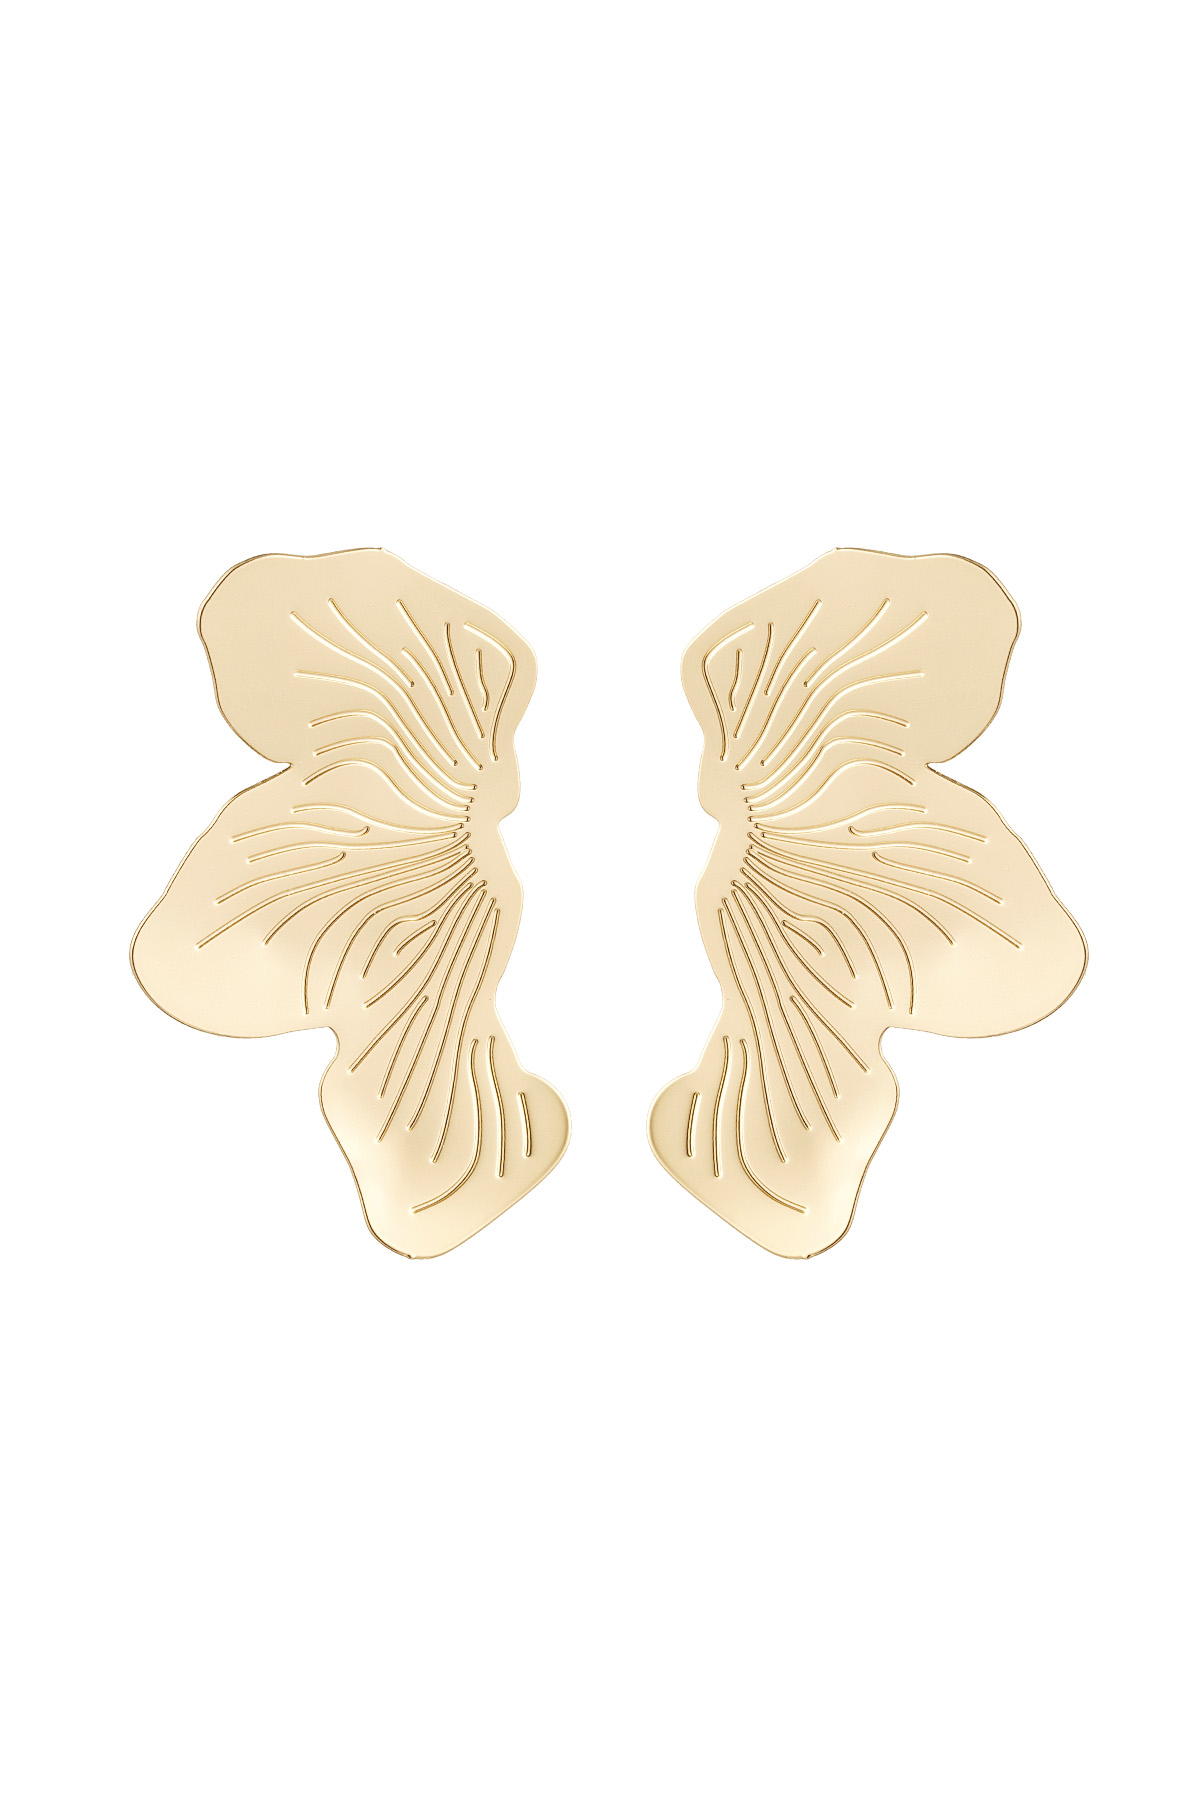 Oorbellensteker vlinder look - goud Koper